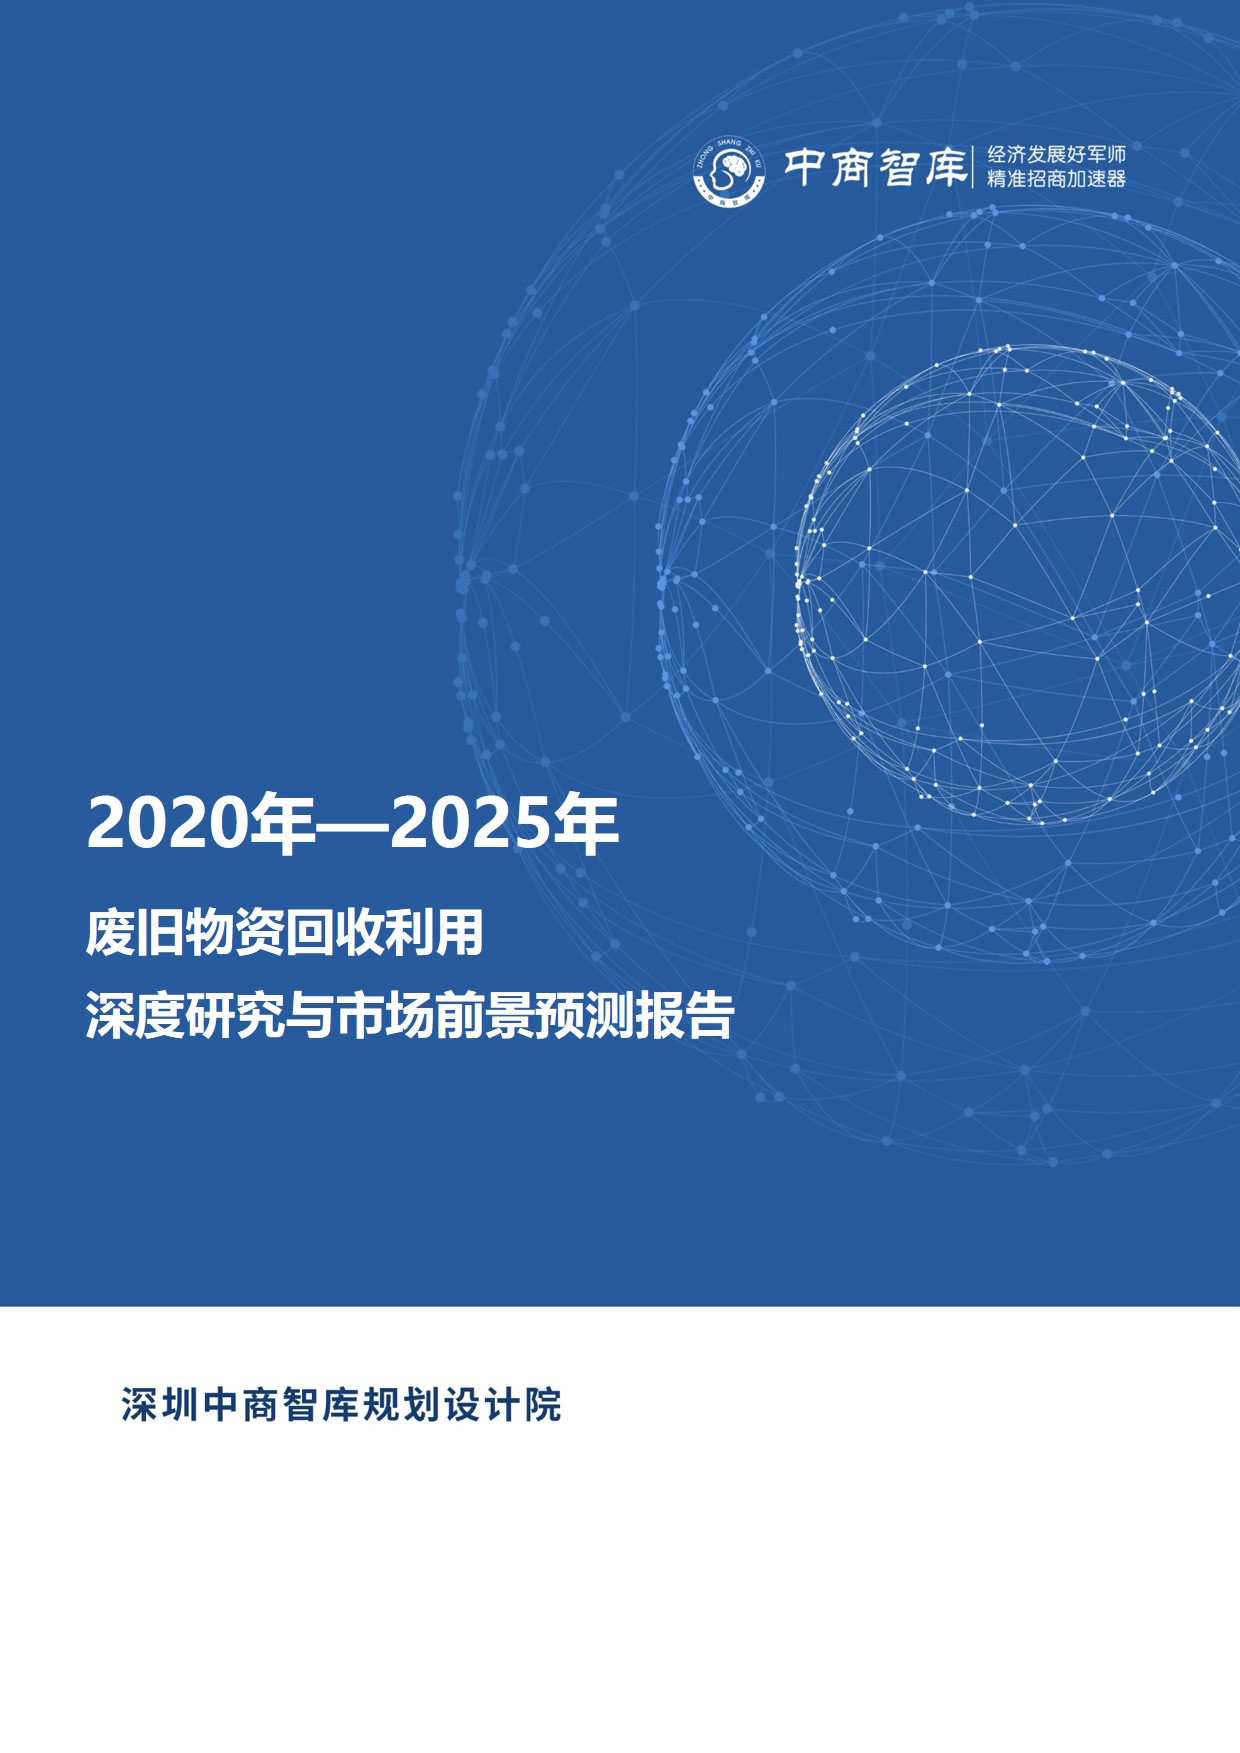 《2020-2025年废旧物资回收利用行业深度研究与市场前景预测报告》